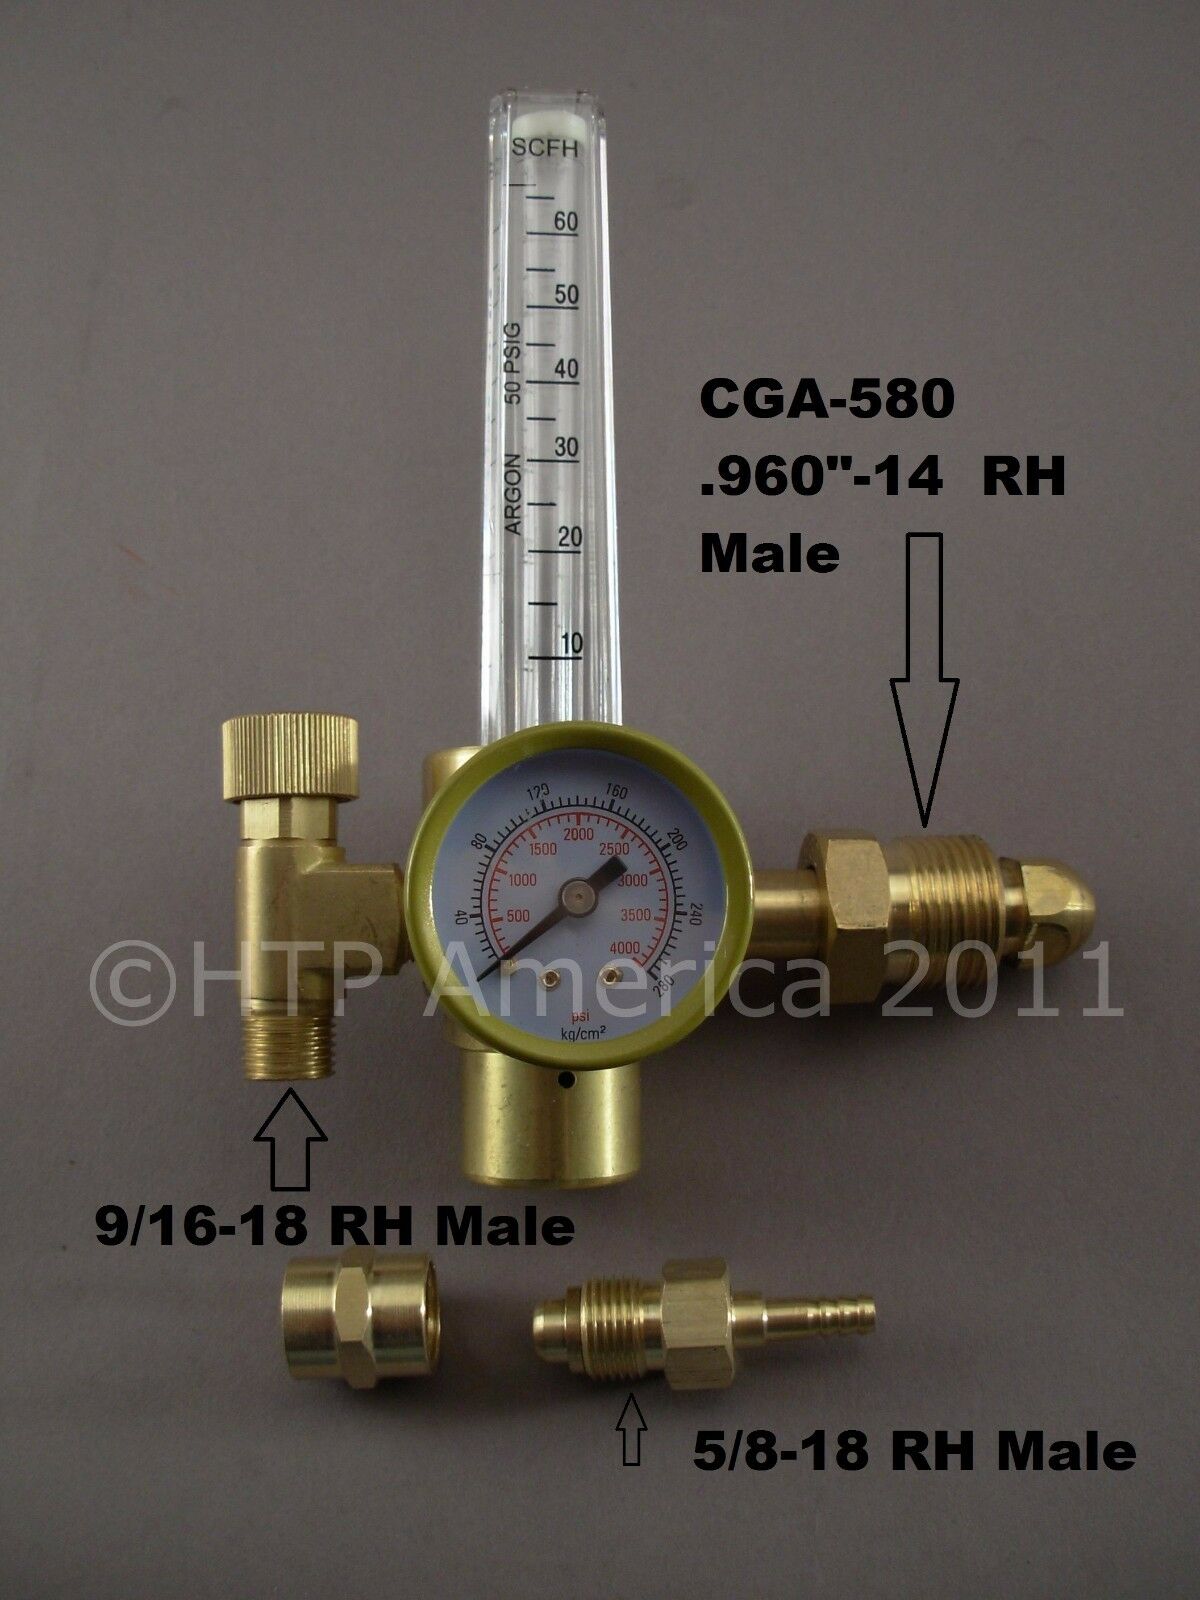 Htp Argon Co2 Mig Tig Flow Meter Regulator Welding Weld Flowmeter